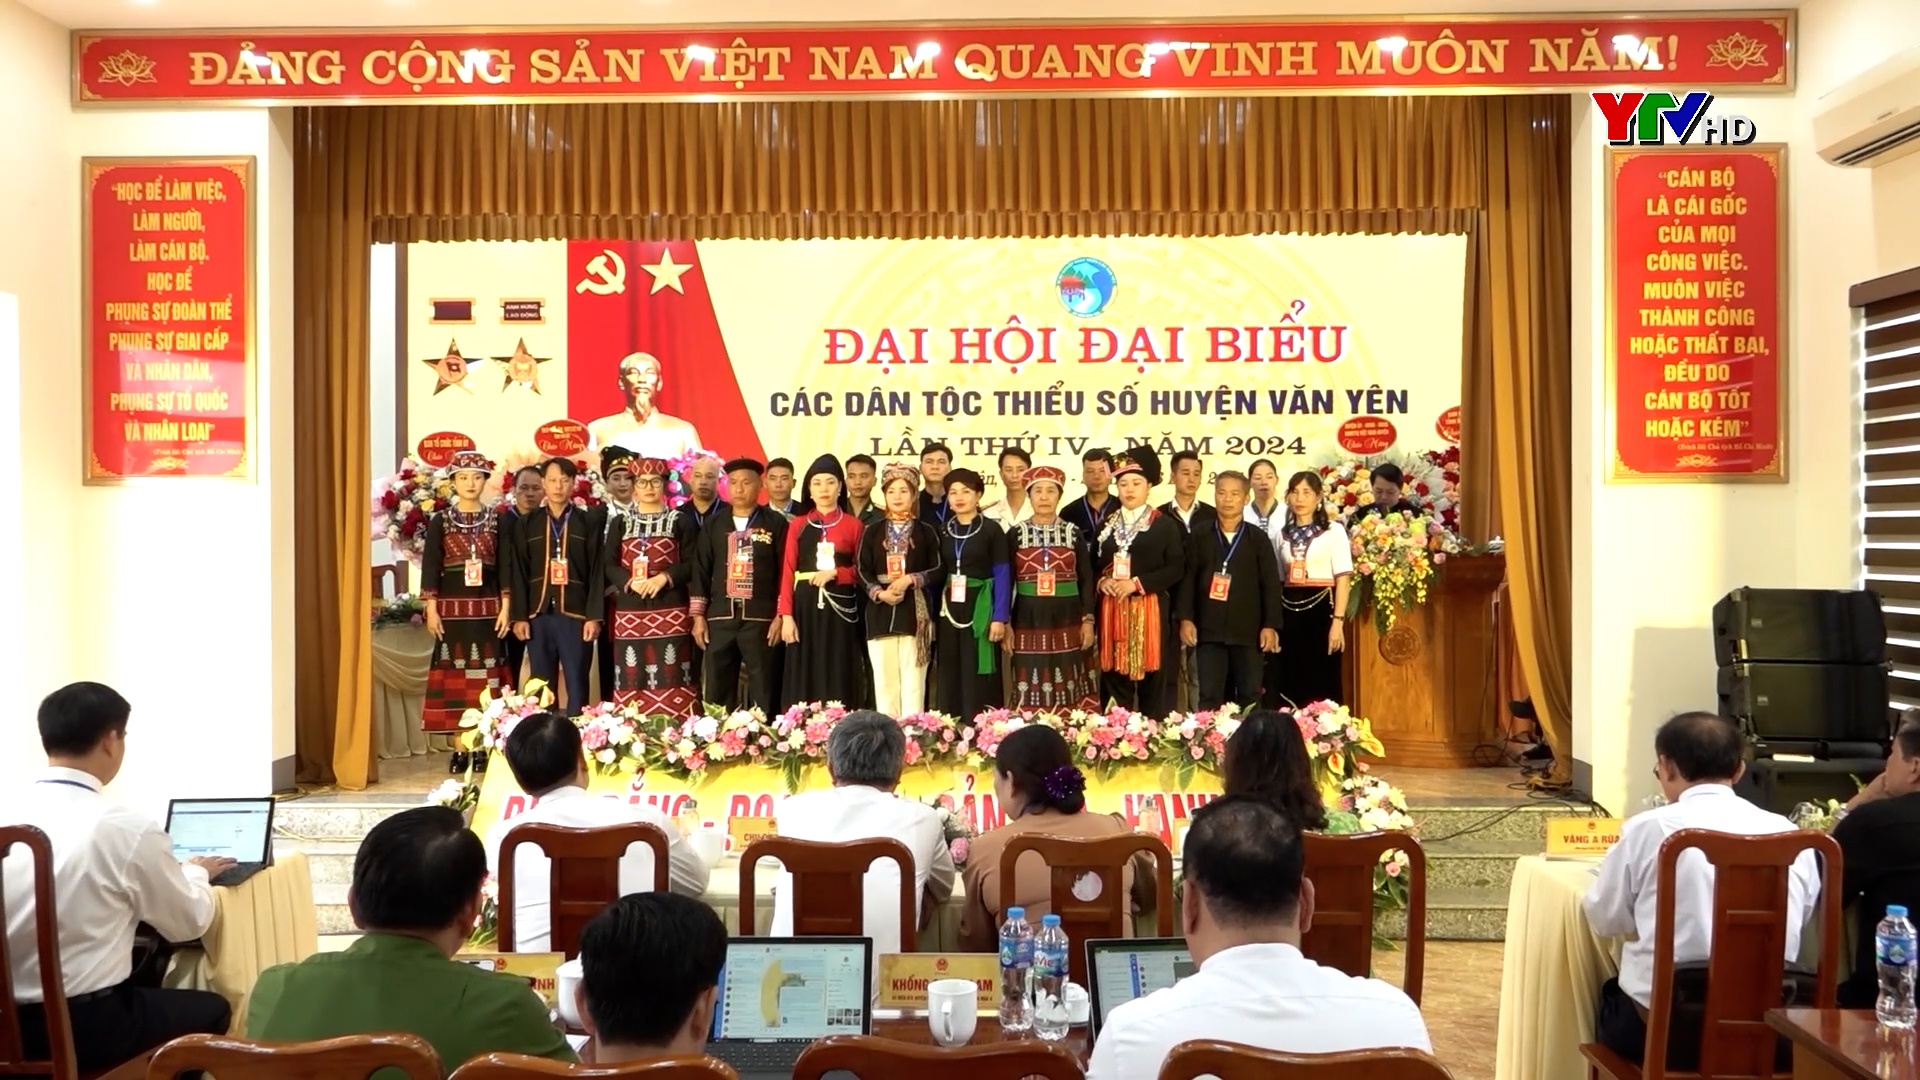 Huyện Văn Yên tổ chức thành công Đại hội đại biểu các dân tộc thiểu số năm 2024